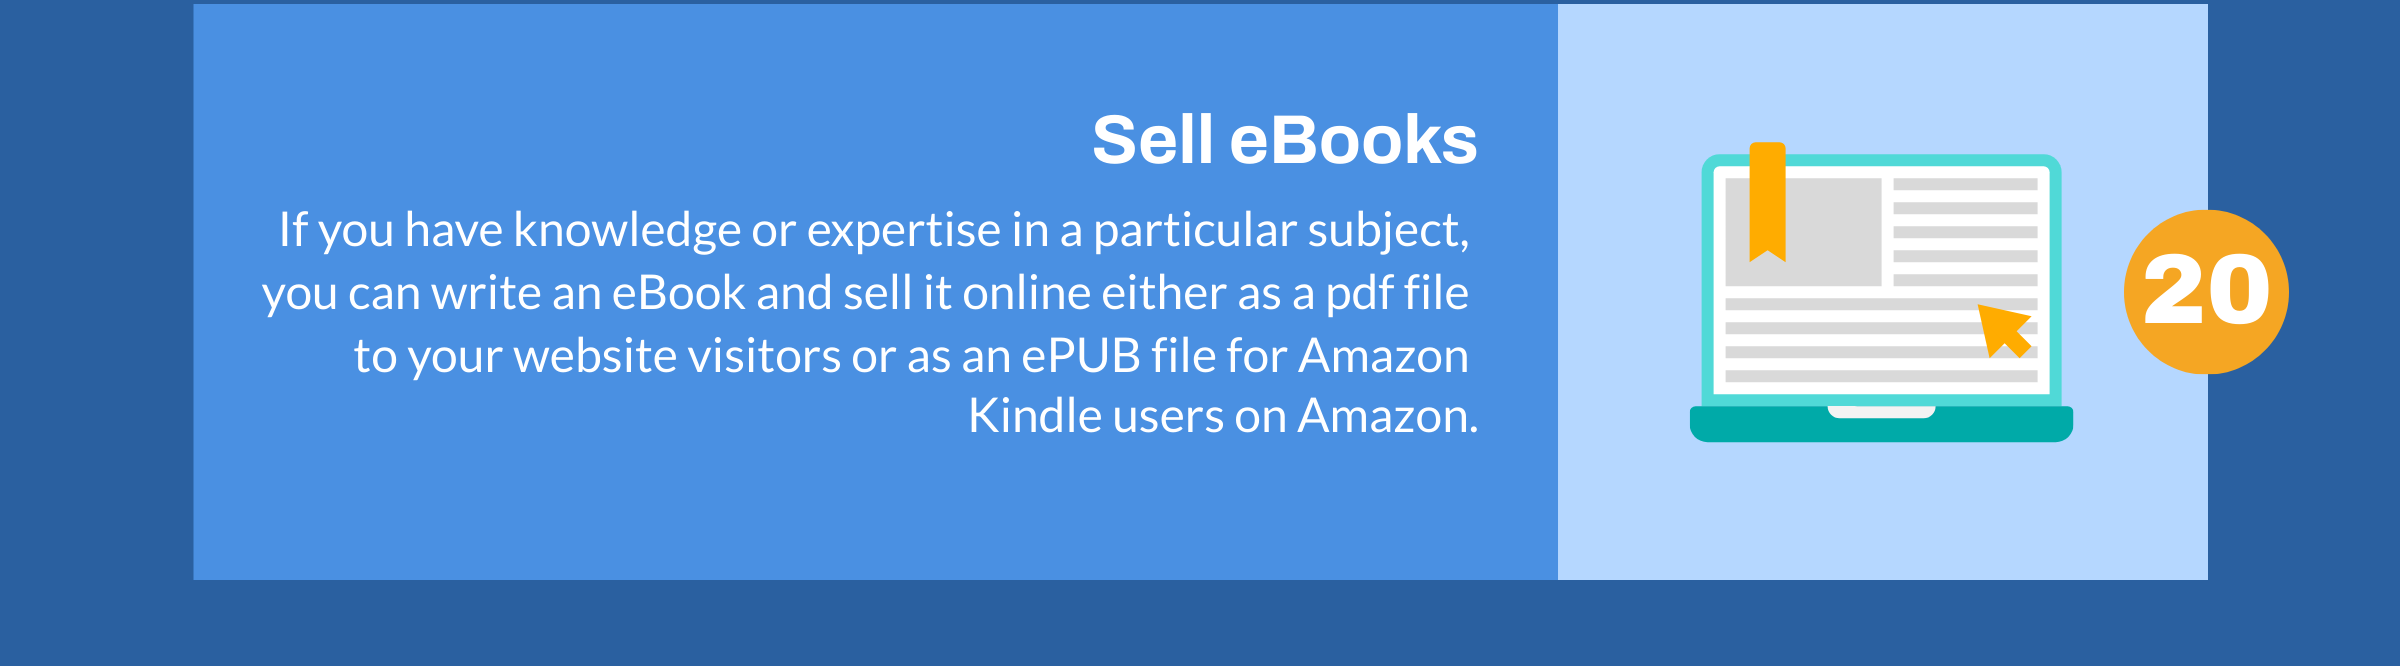 Zakelijk e-book verkopen